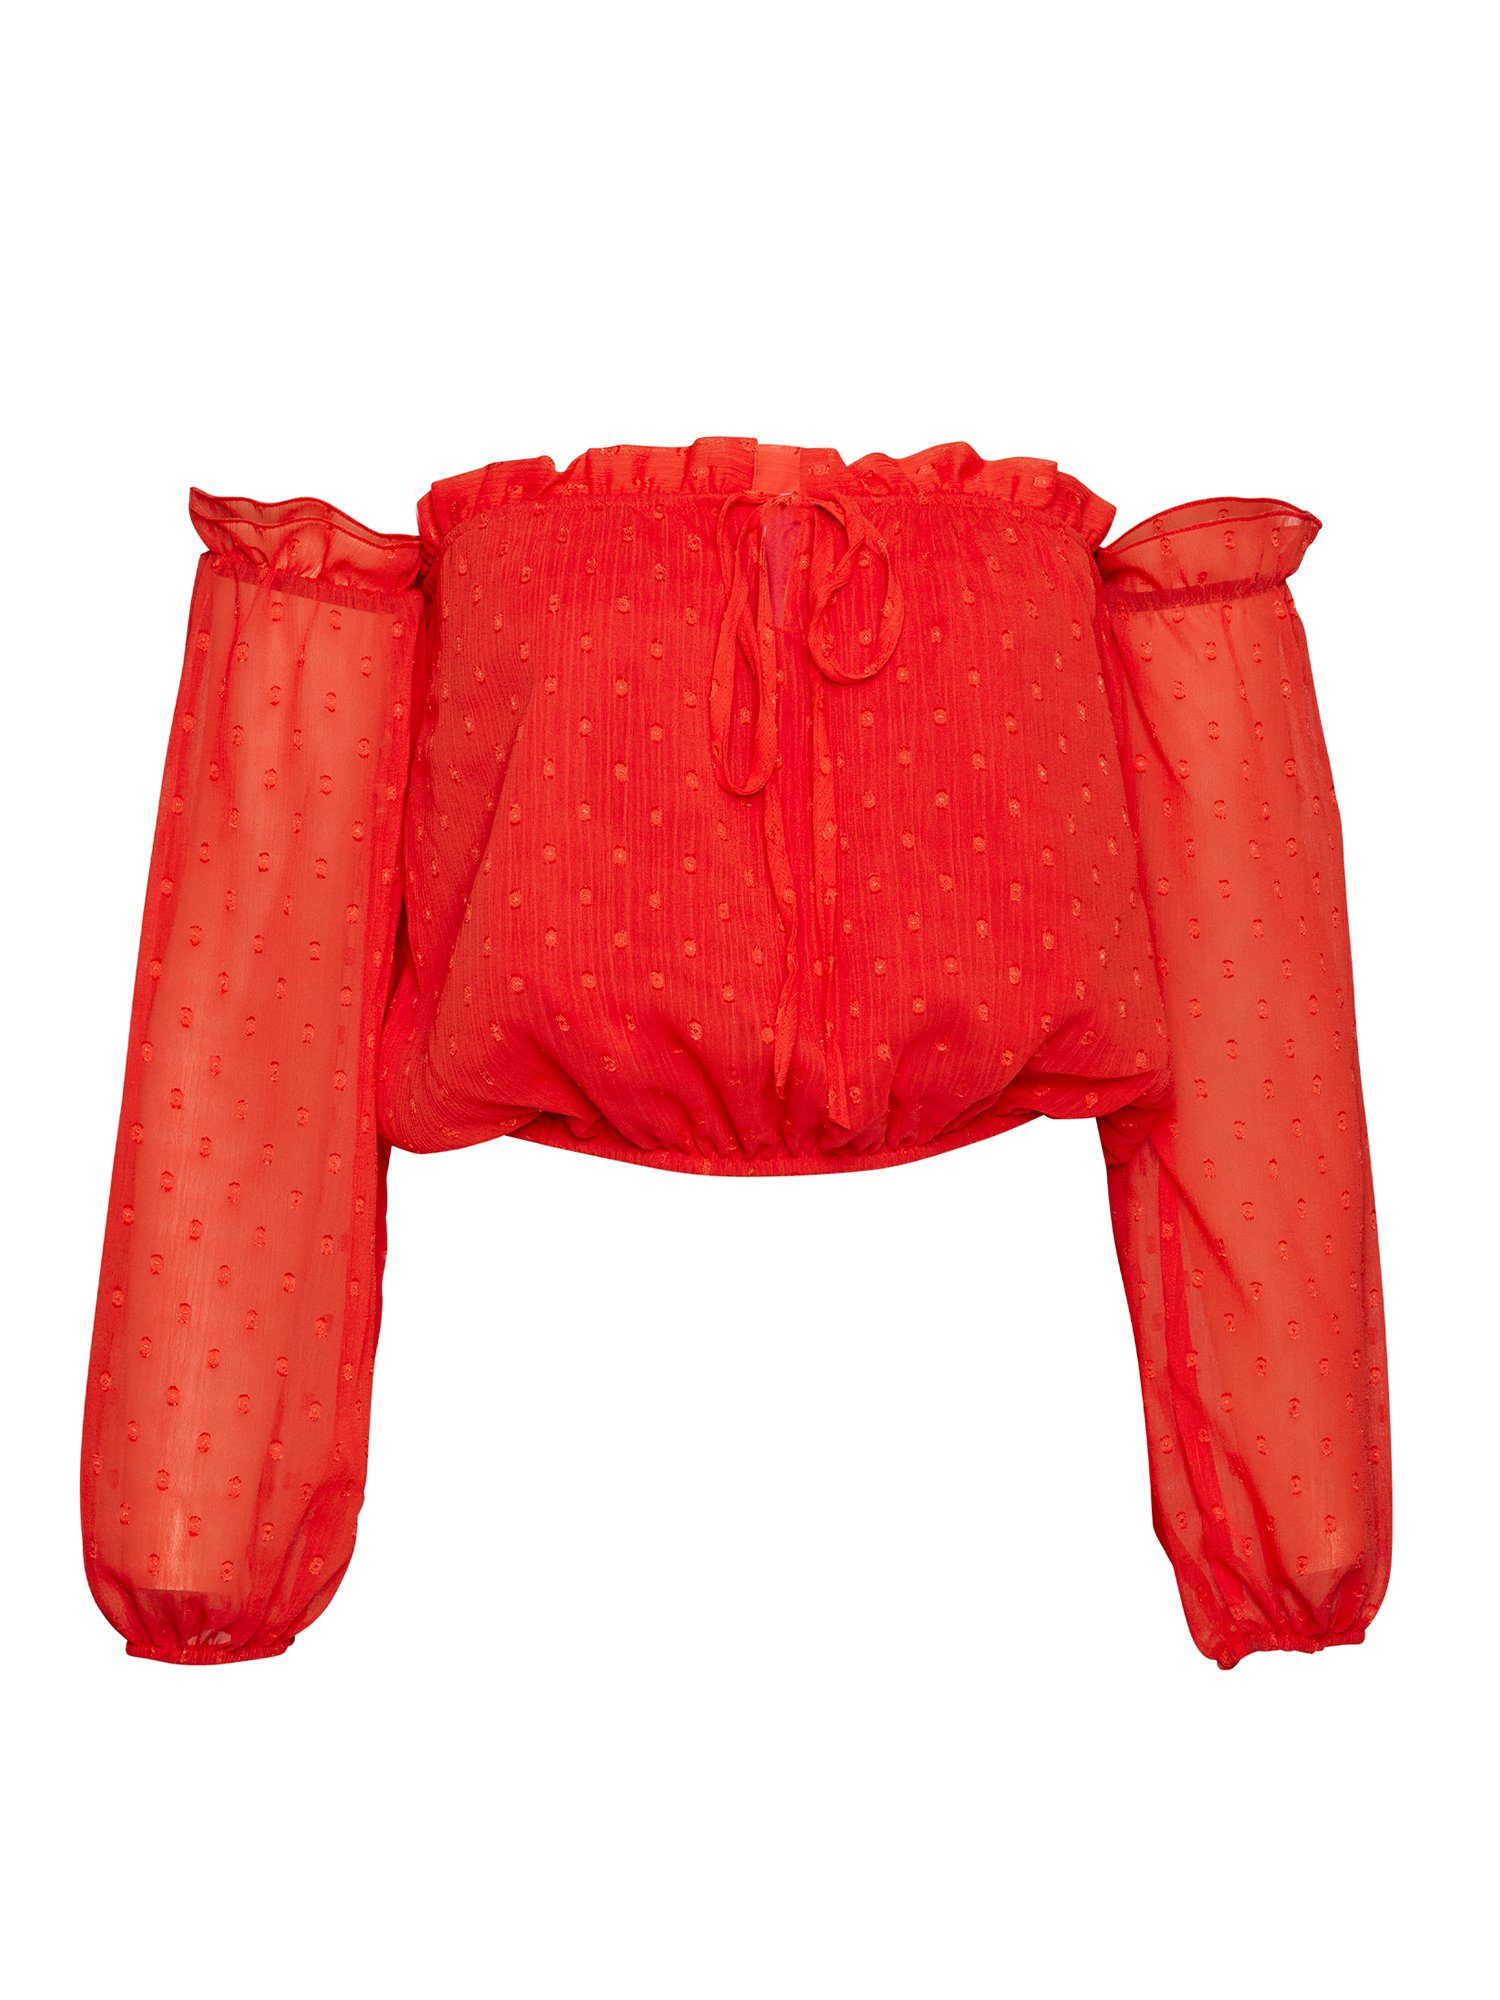 Freshlions Dirndlbluse Schulterfreie Bluse in rot - S Rüschen, keine Angabe